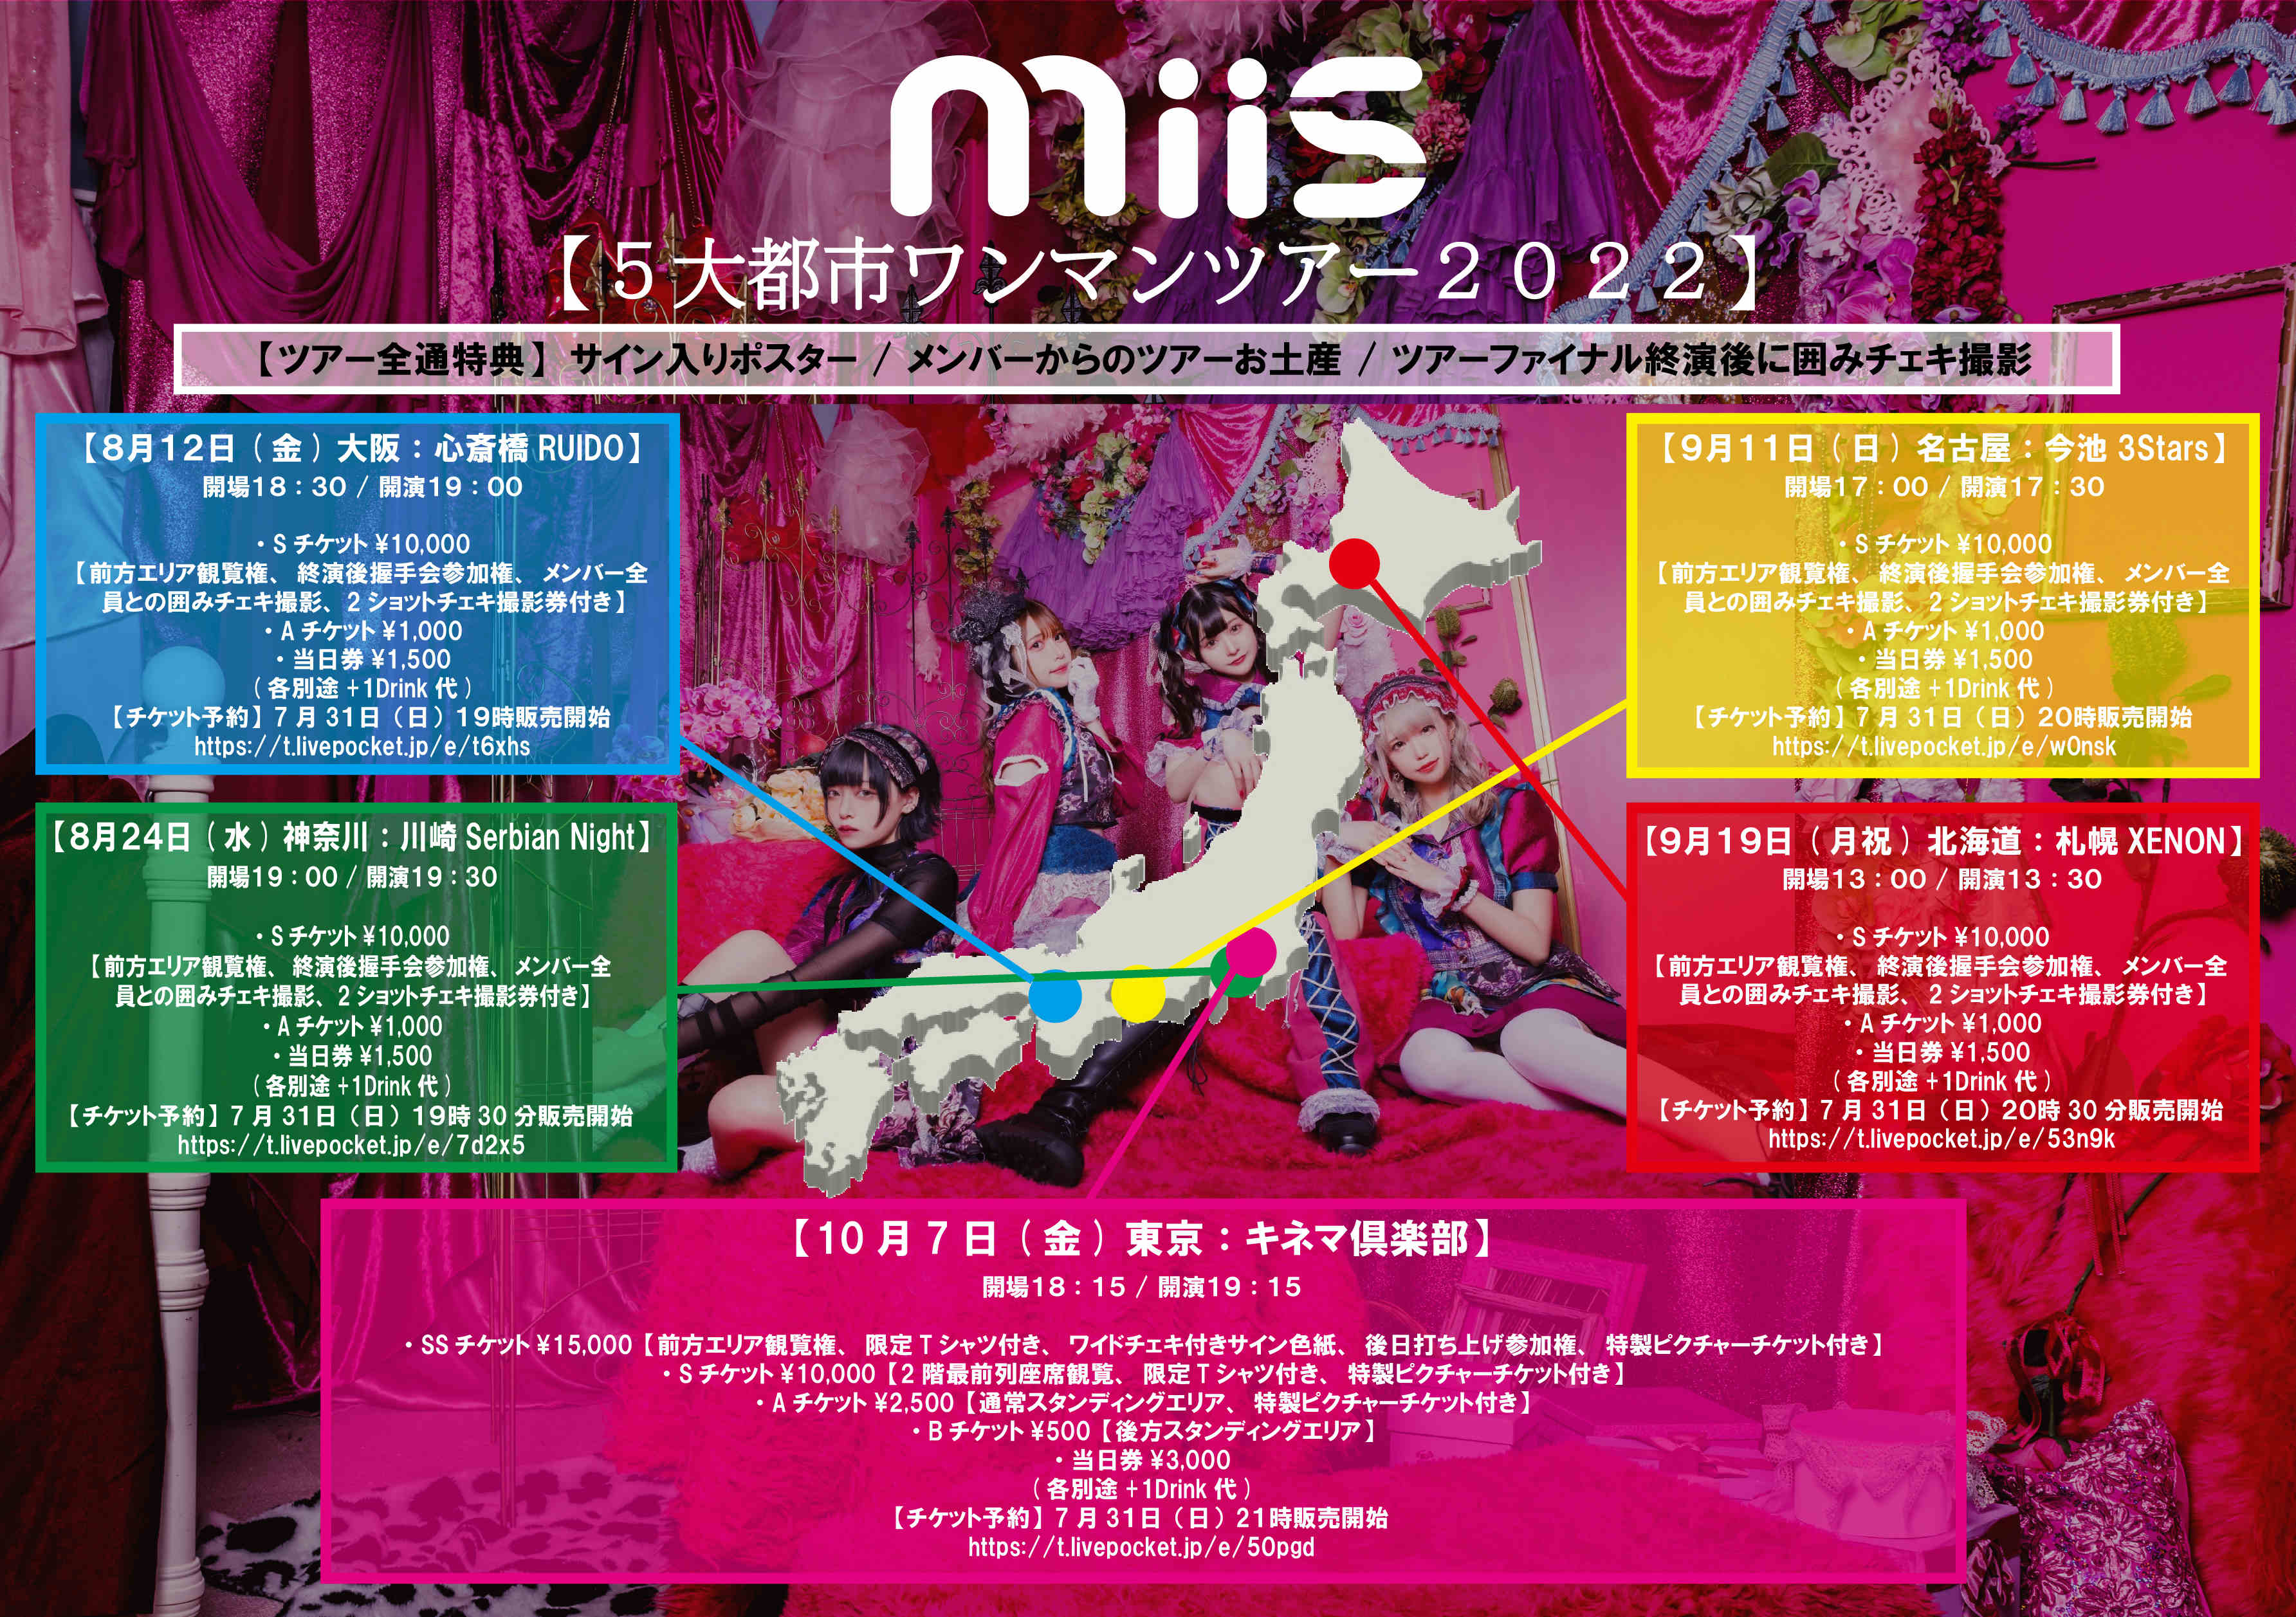 MiiS５大都市ワンマンツアー２０２２-東京-ツアーファイナル